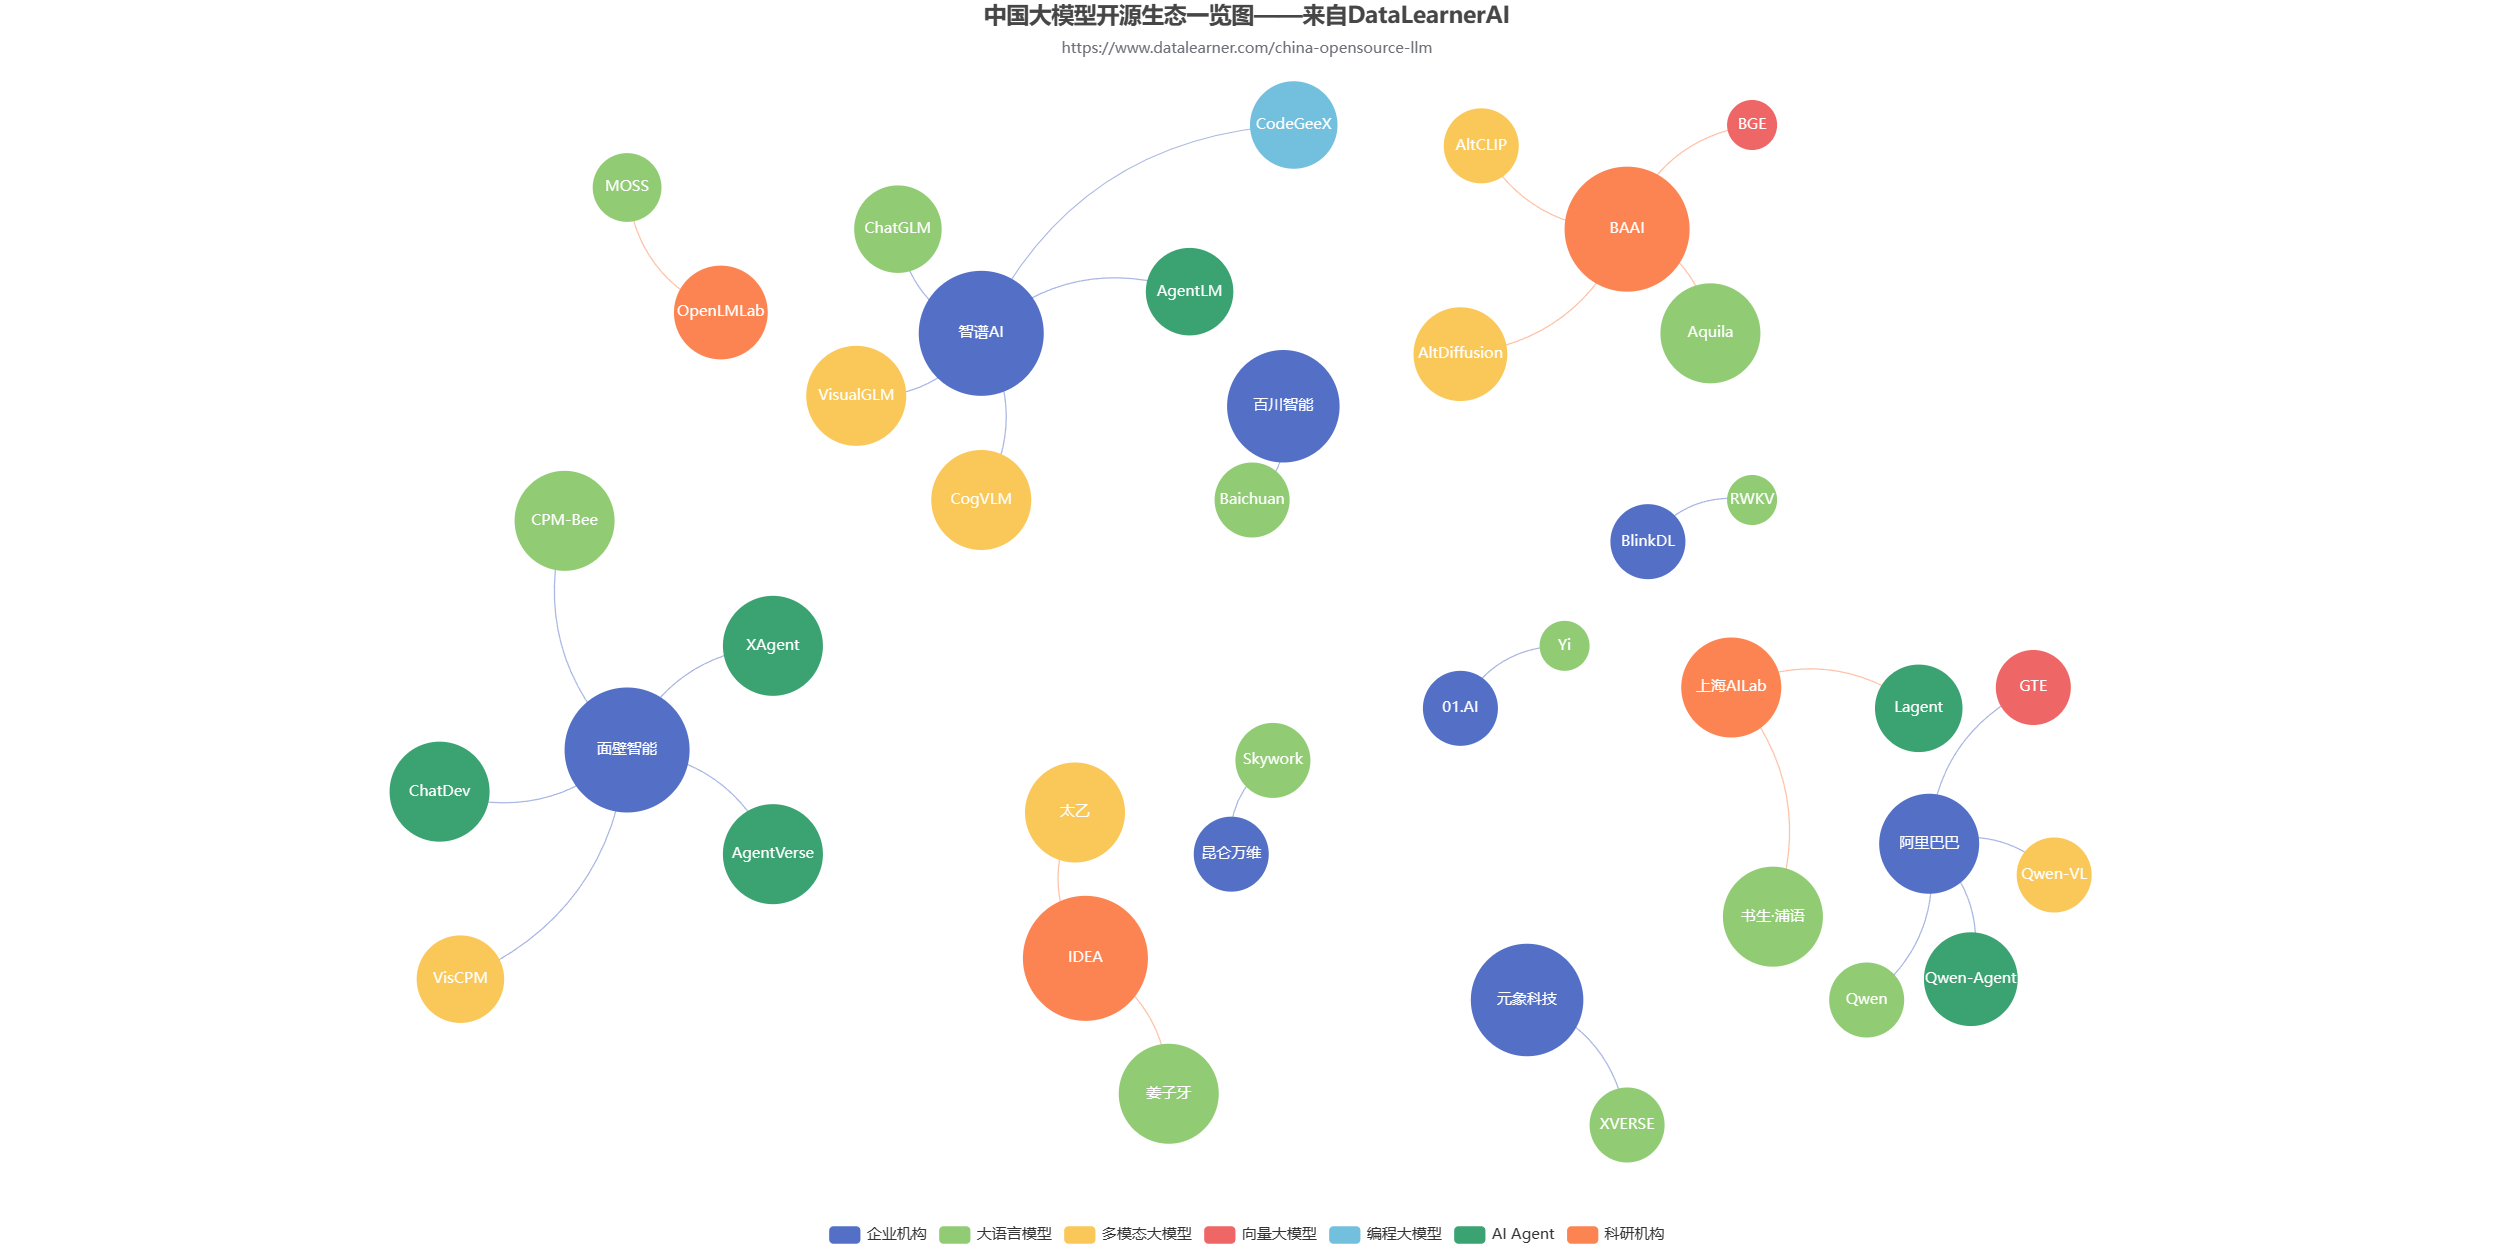 中国国产开源大模型生态全览图（DataLearnerAI）